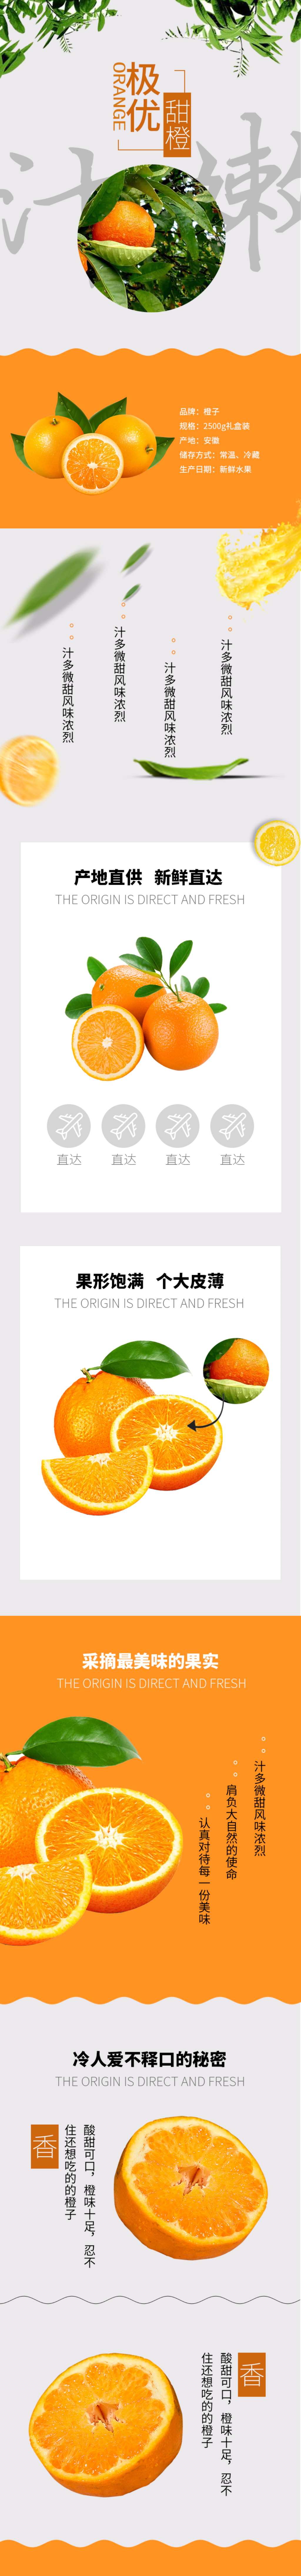 清新时尚简约风格橙子水果详情页素材